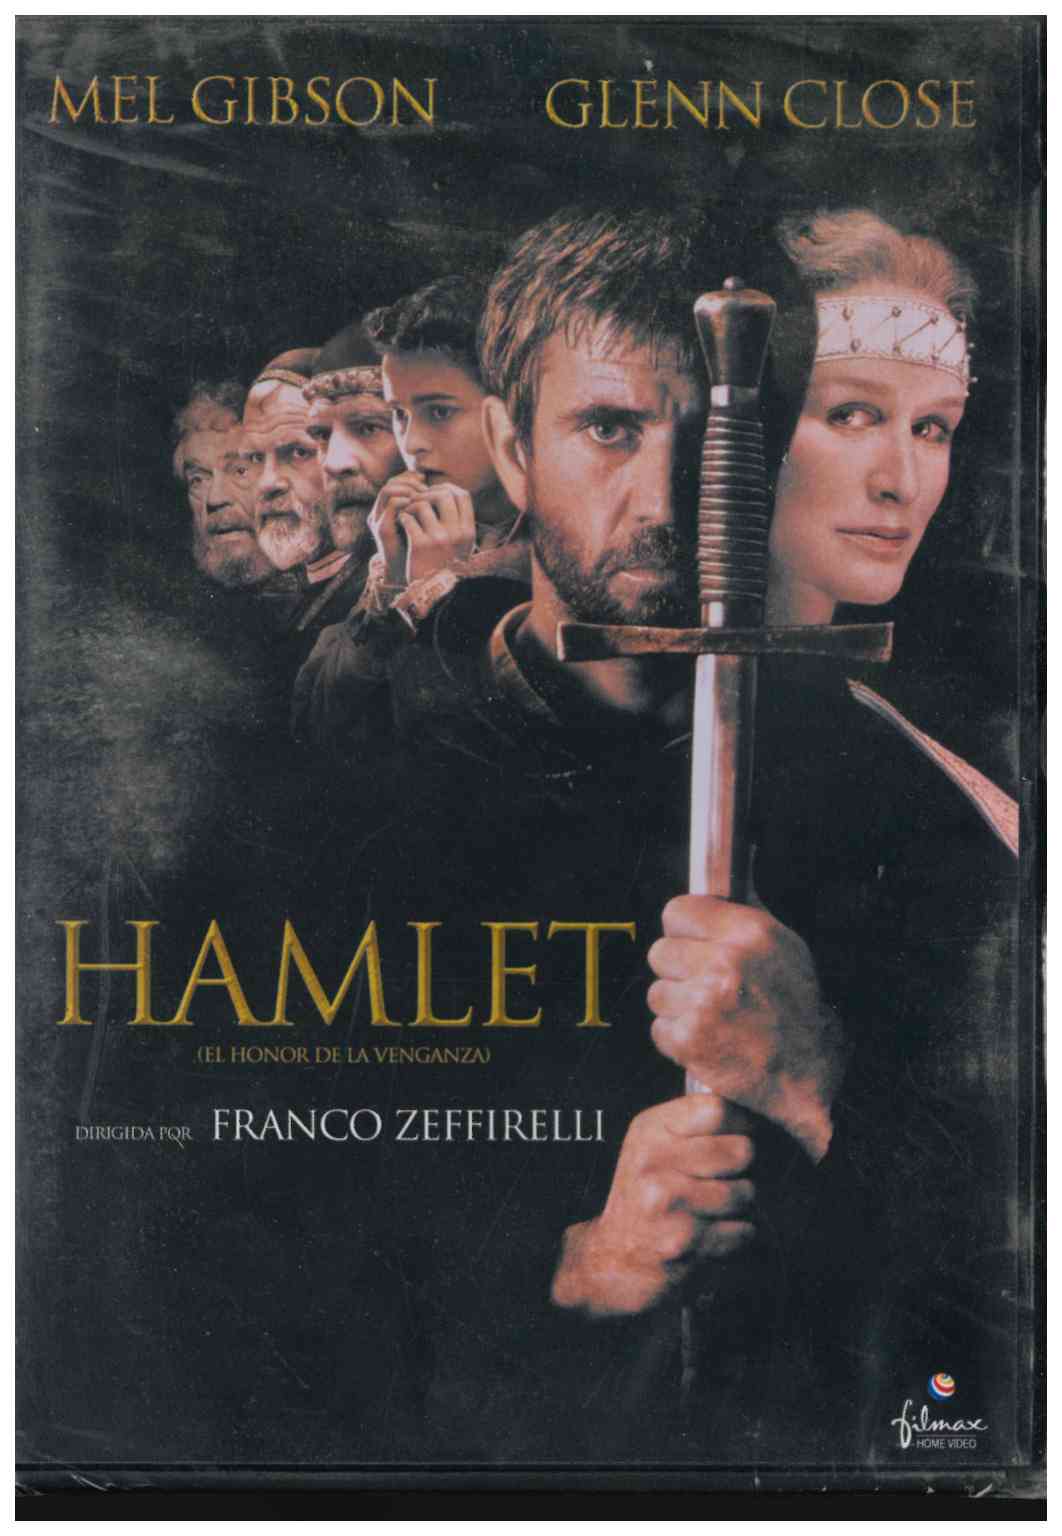 Hamlet. Filmax Home Video. Mel Gibson, Glenn Close